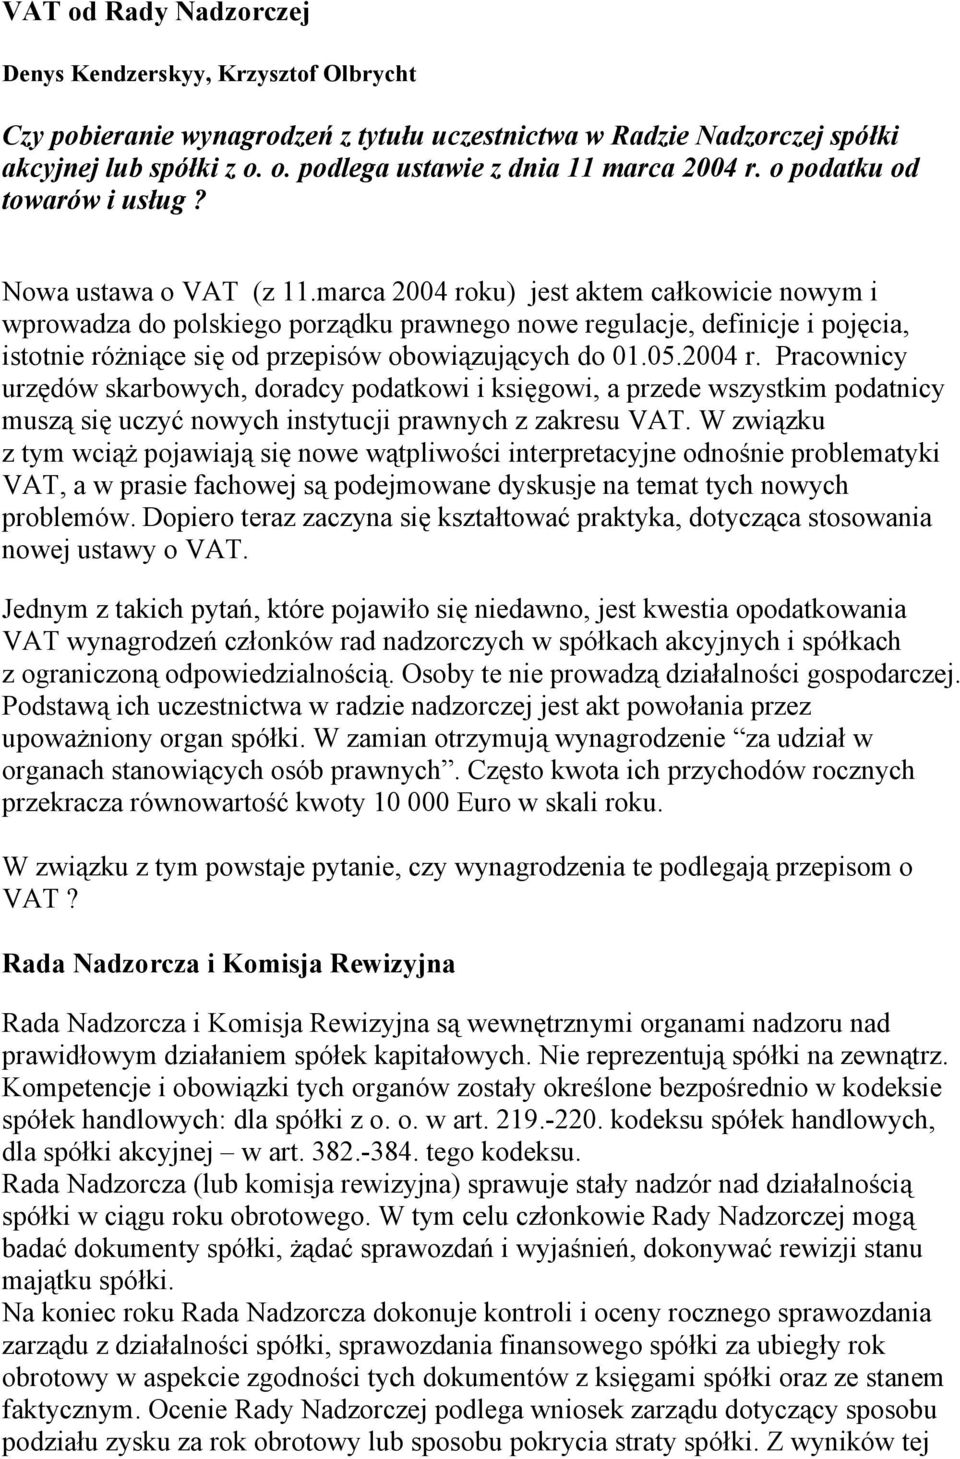 marca 2004 roku) jest aktem całkowicie nowym i wprowadza do polskiego porządku prawnego nowe regulacje, definicje i pojęcia, istotnie różniące się od przepisów obowiązujących do 01.05.2004 r. Pracownicy urzędów skarbowych, doradcy podatkowi i księgowi, a przede wszystkim podatnicy muszą się uczyć nowych instytucji prawnych z zakresu VAT.